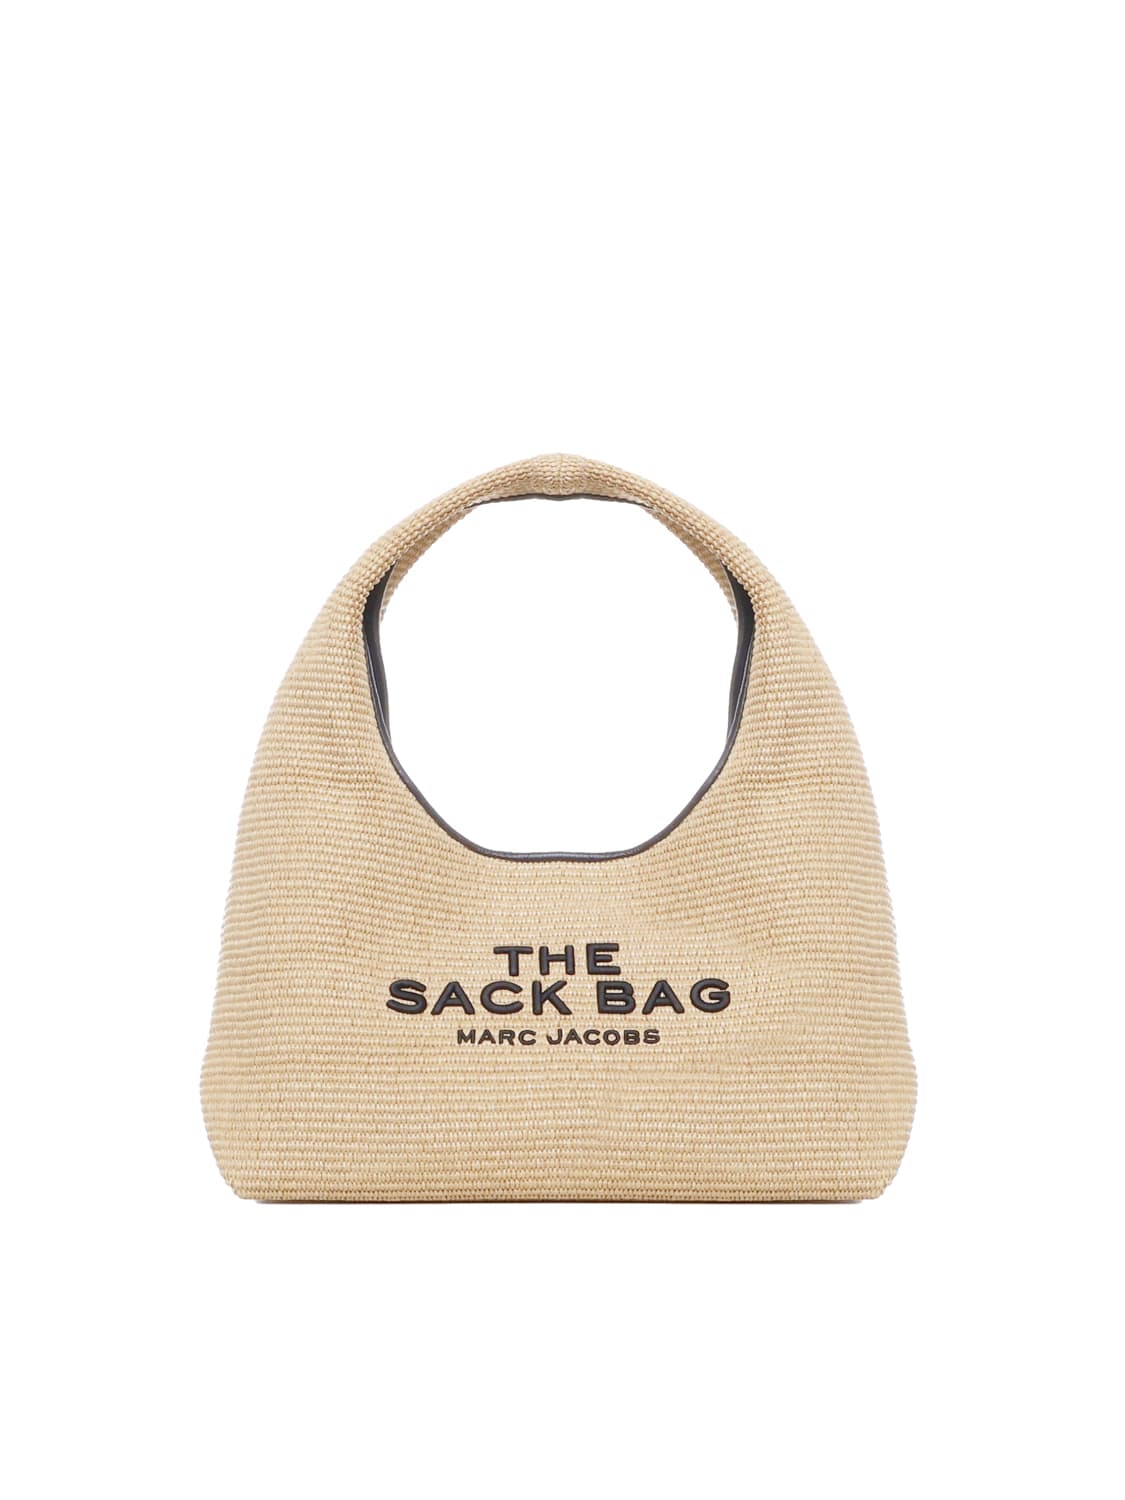 The Woven Sack Shoulder Bag